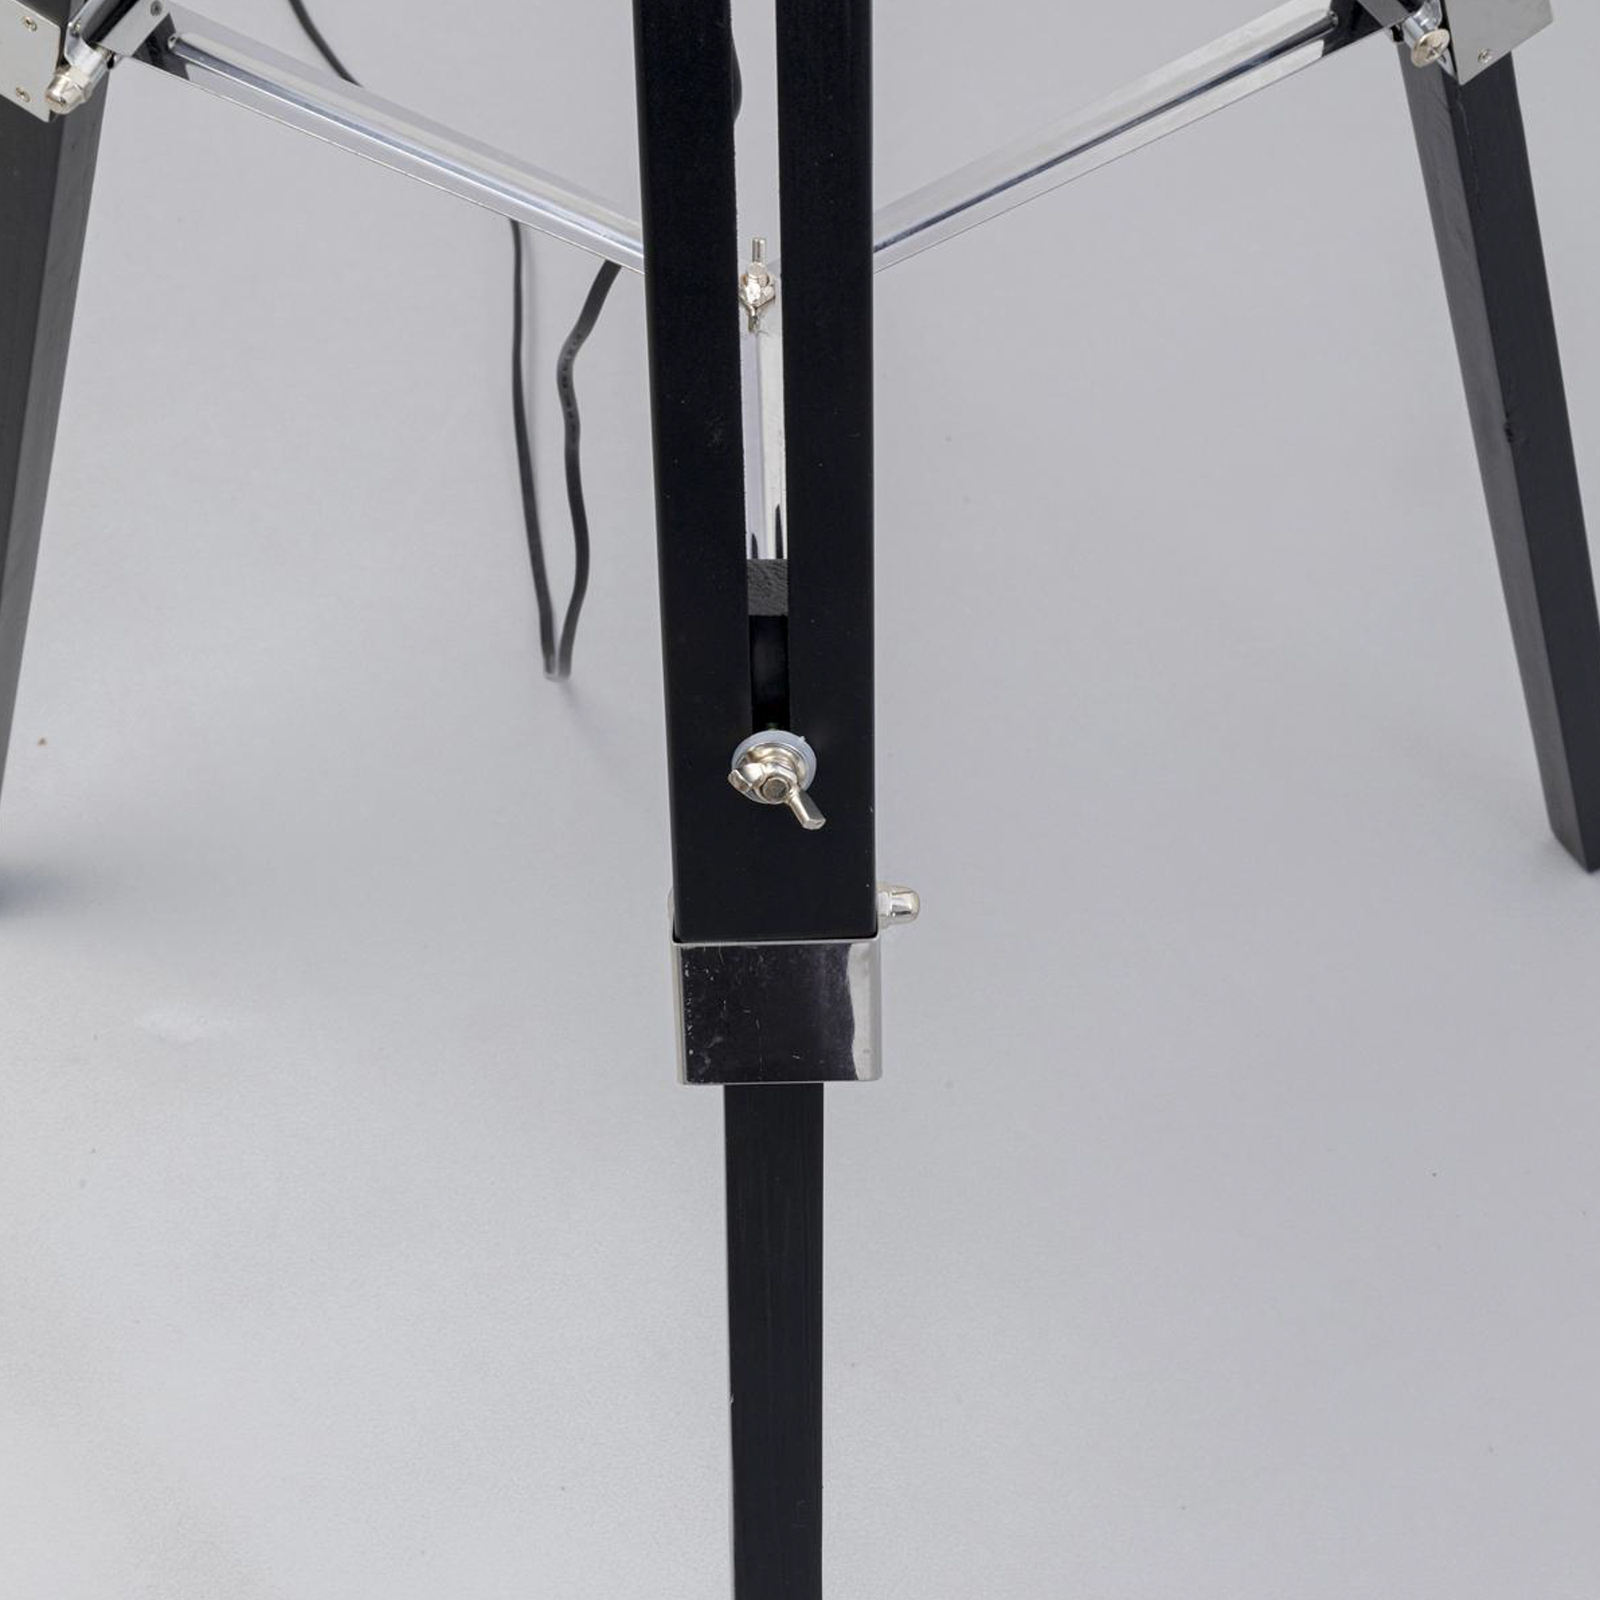 KARE Raquette gulvlampe, svart, tekstil, tre, høyde 144 cm